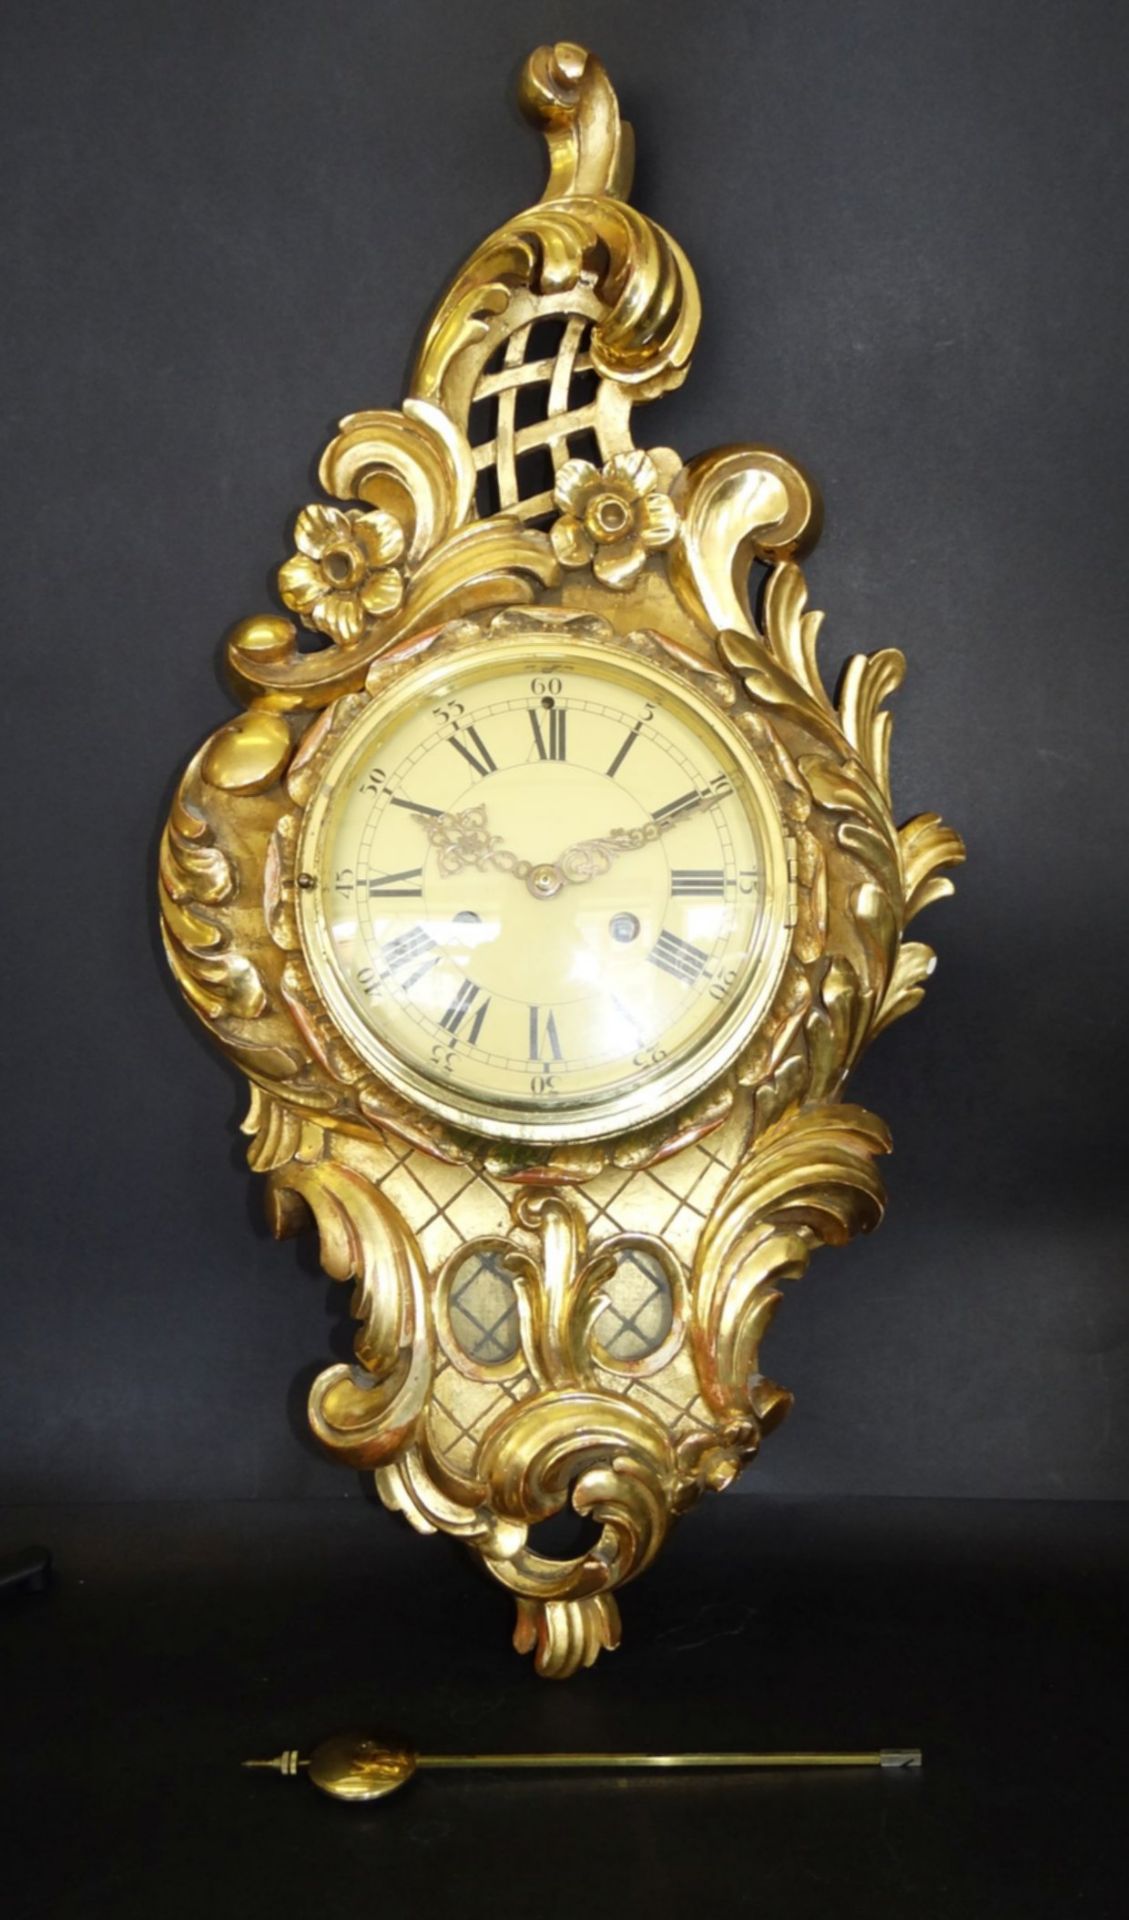 gr. Kartell-Uhr, Holz vergoldet, , H-62 cm, B-32 cm, guter Zustand, leider falsches , zu langes - Bild 6 aus 10